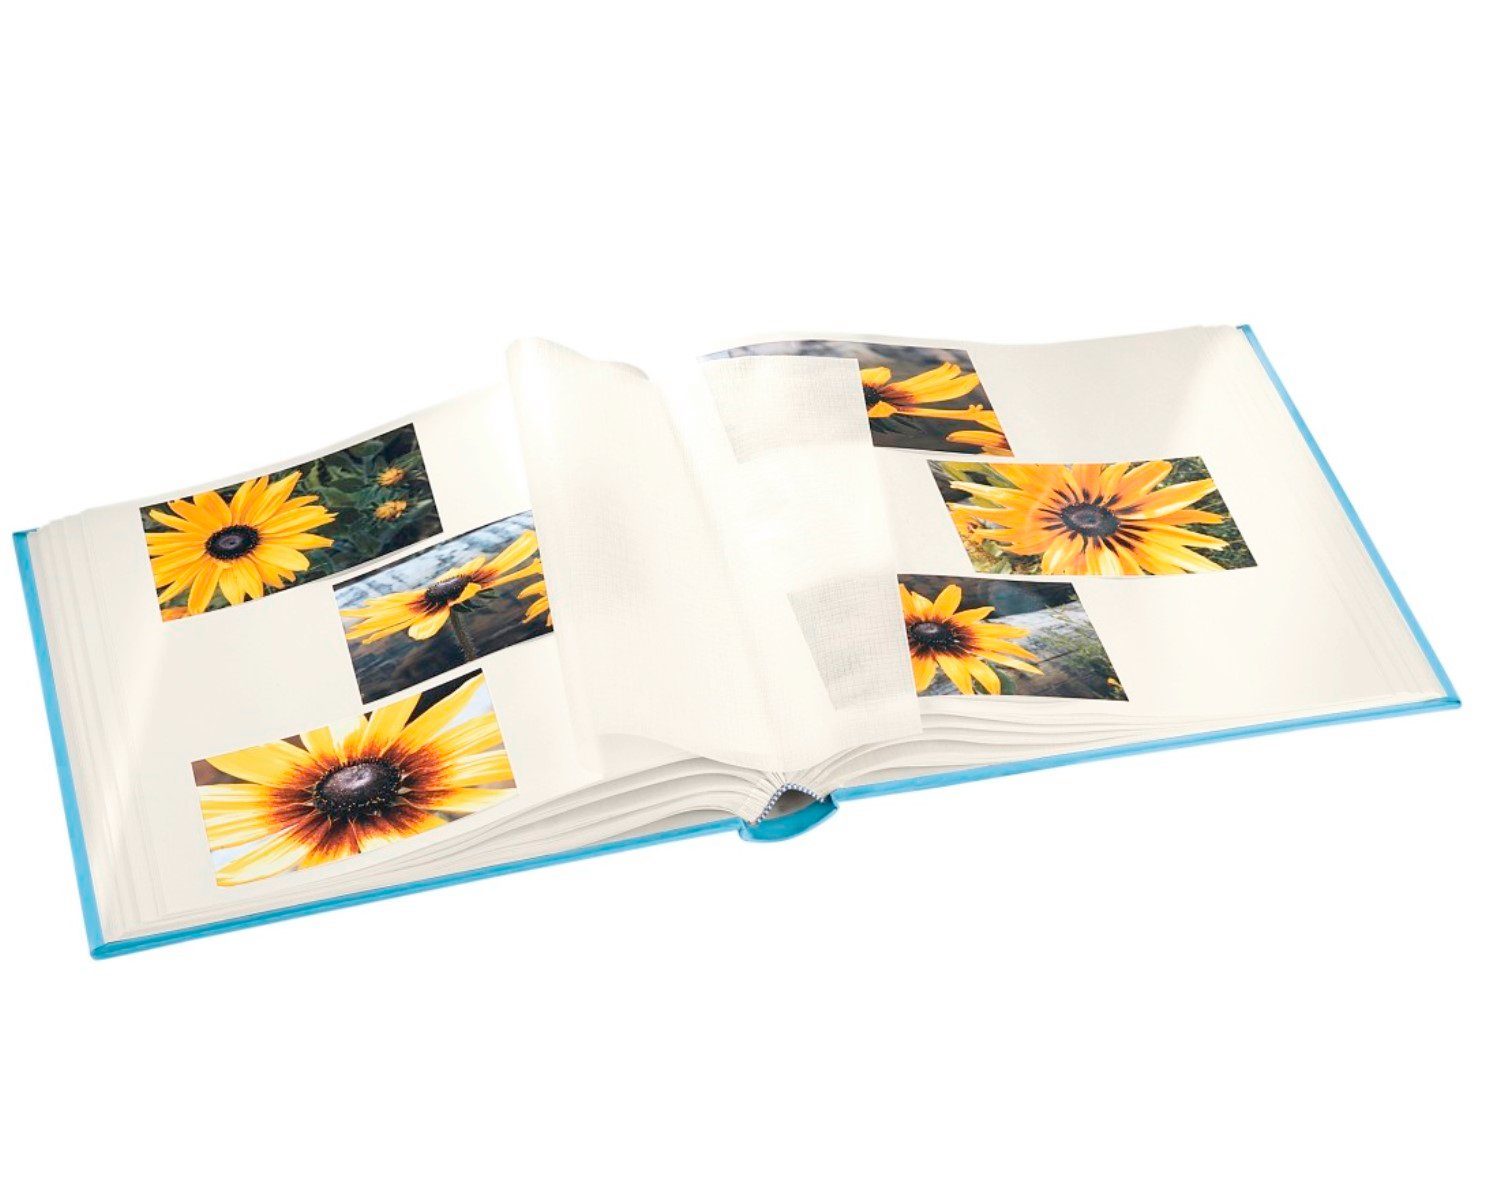 80 Buch-Album 80 Bilder, 320 Jumbo 30x30cm Swan Seiten, Hama Foto-Album Fotoalbum Kunstdruck Pastell, Seiten,